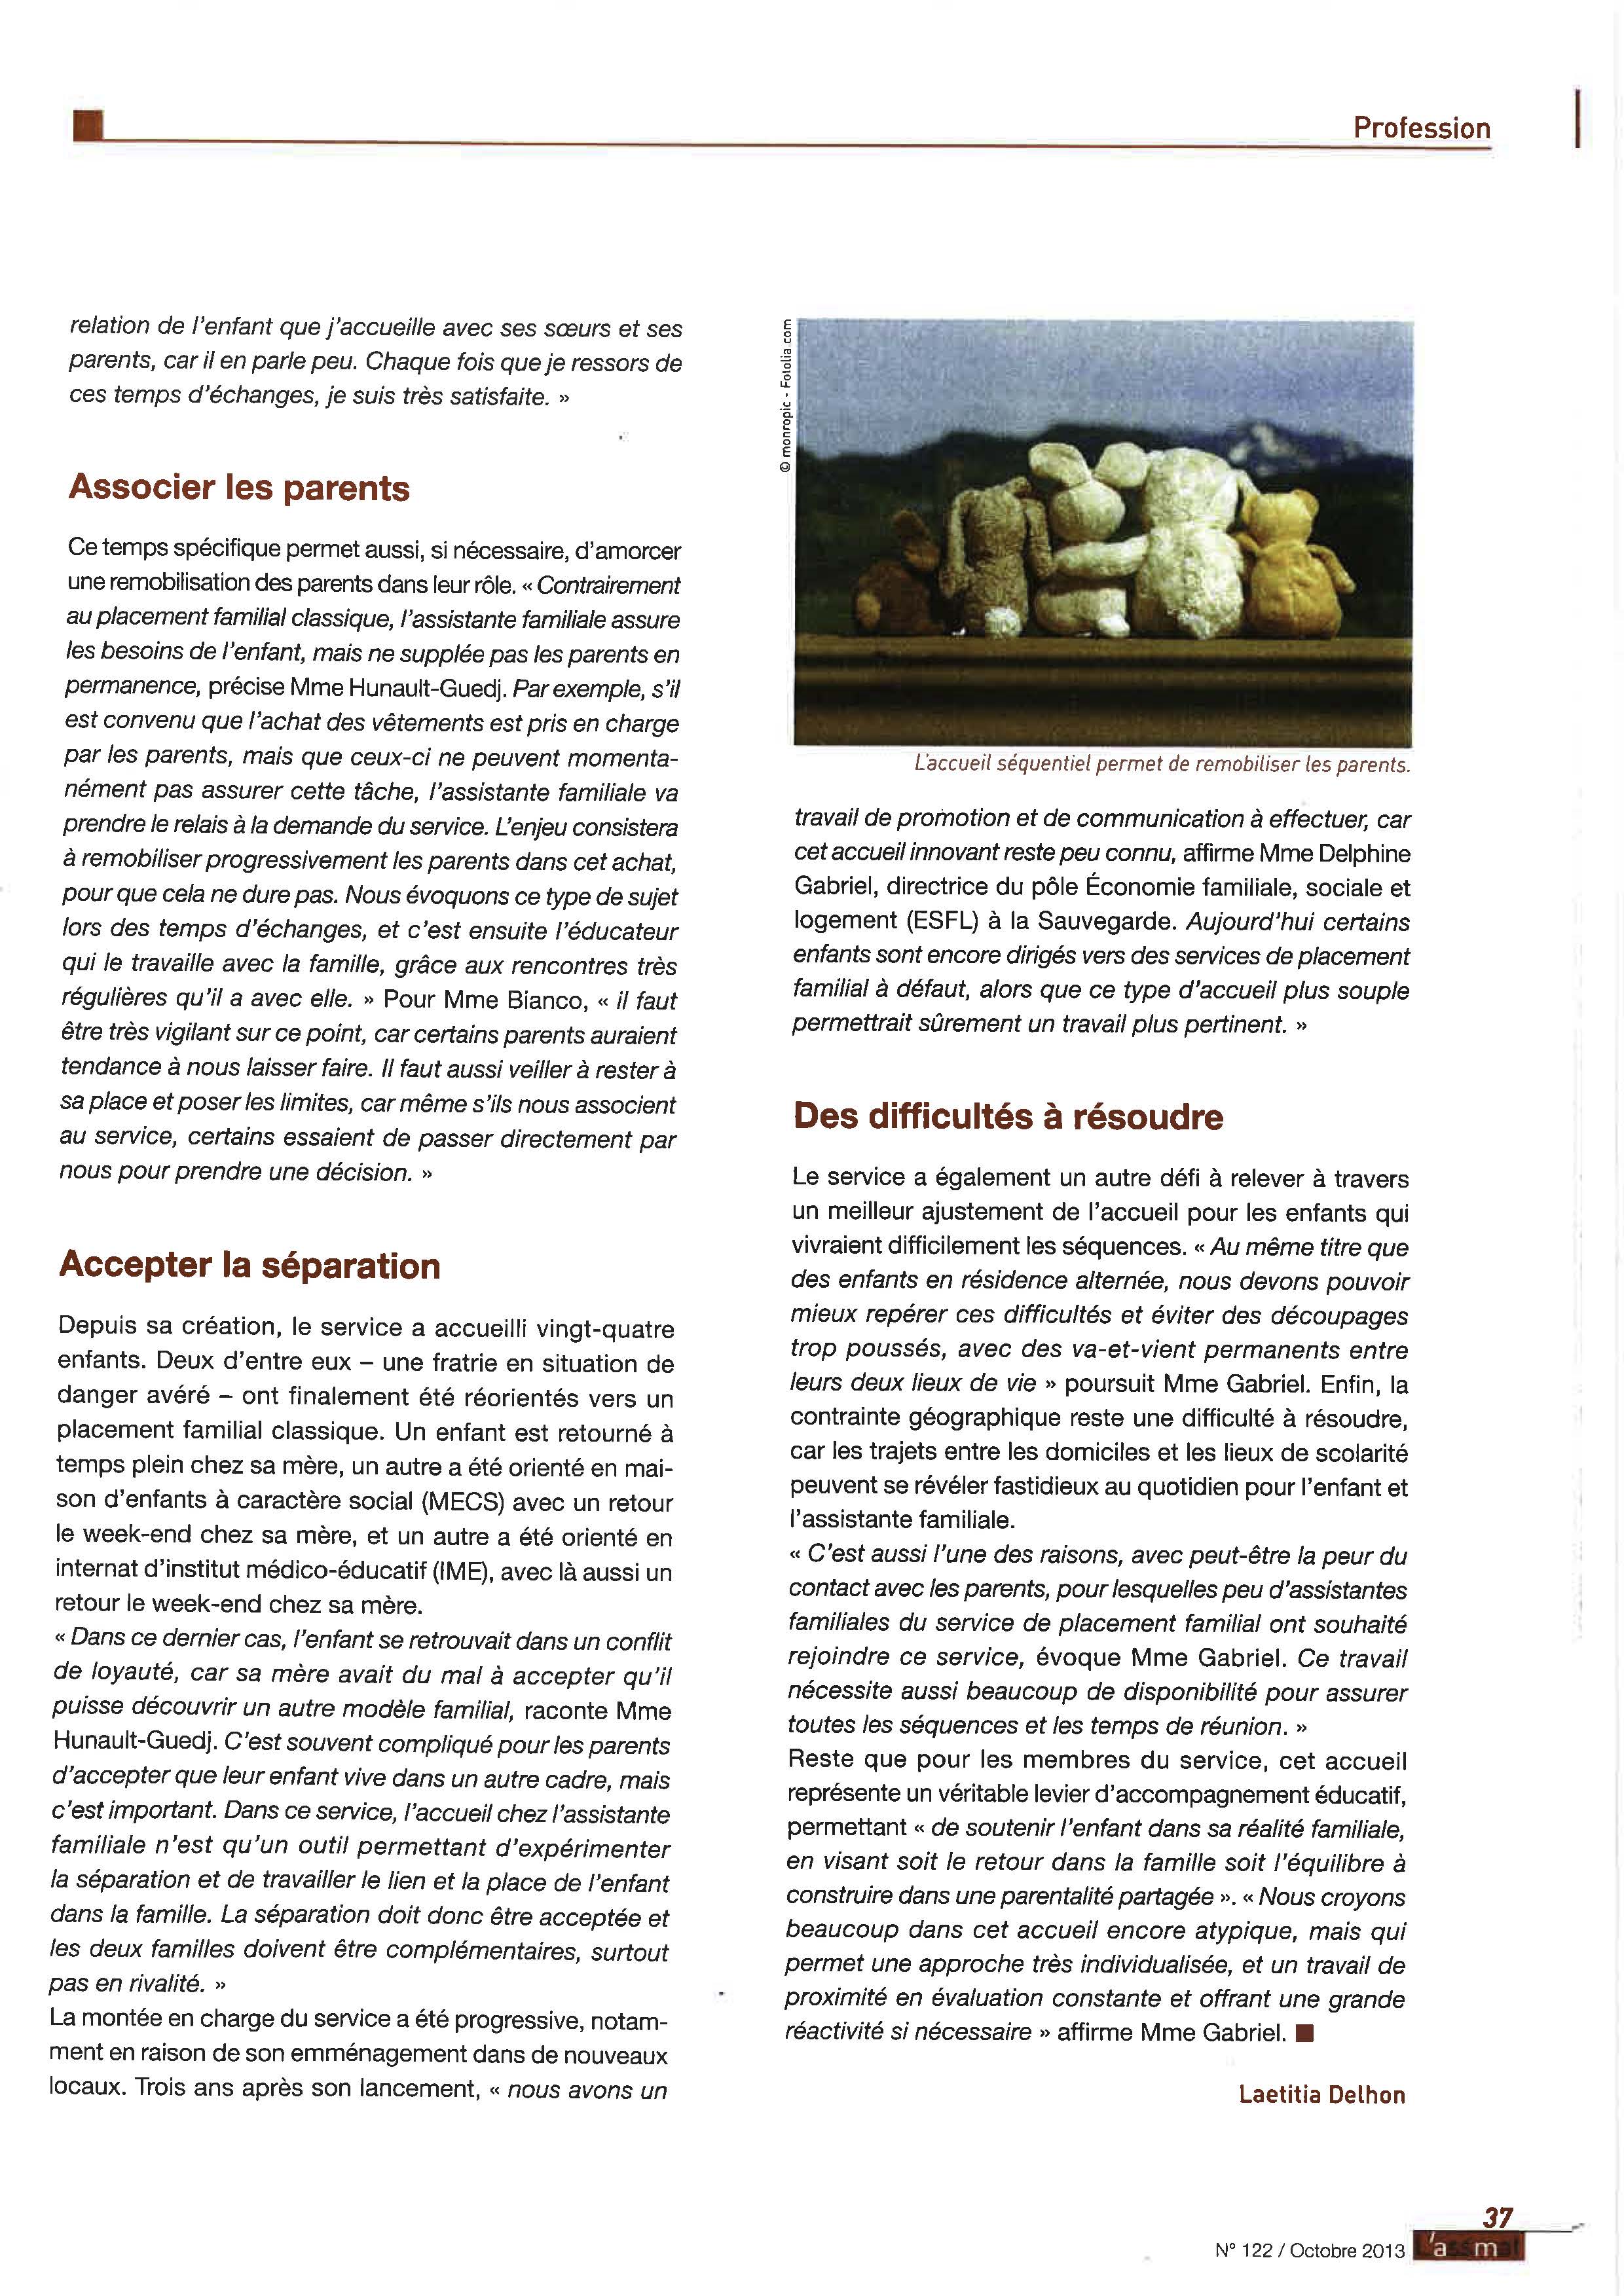 38 - Accueil séquentiel Page 3 - magazine ASSMAT - Oct 2013